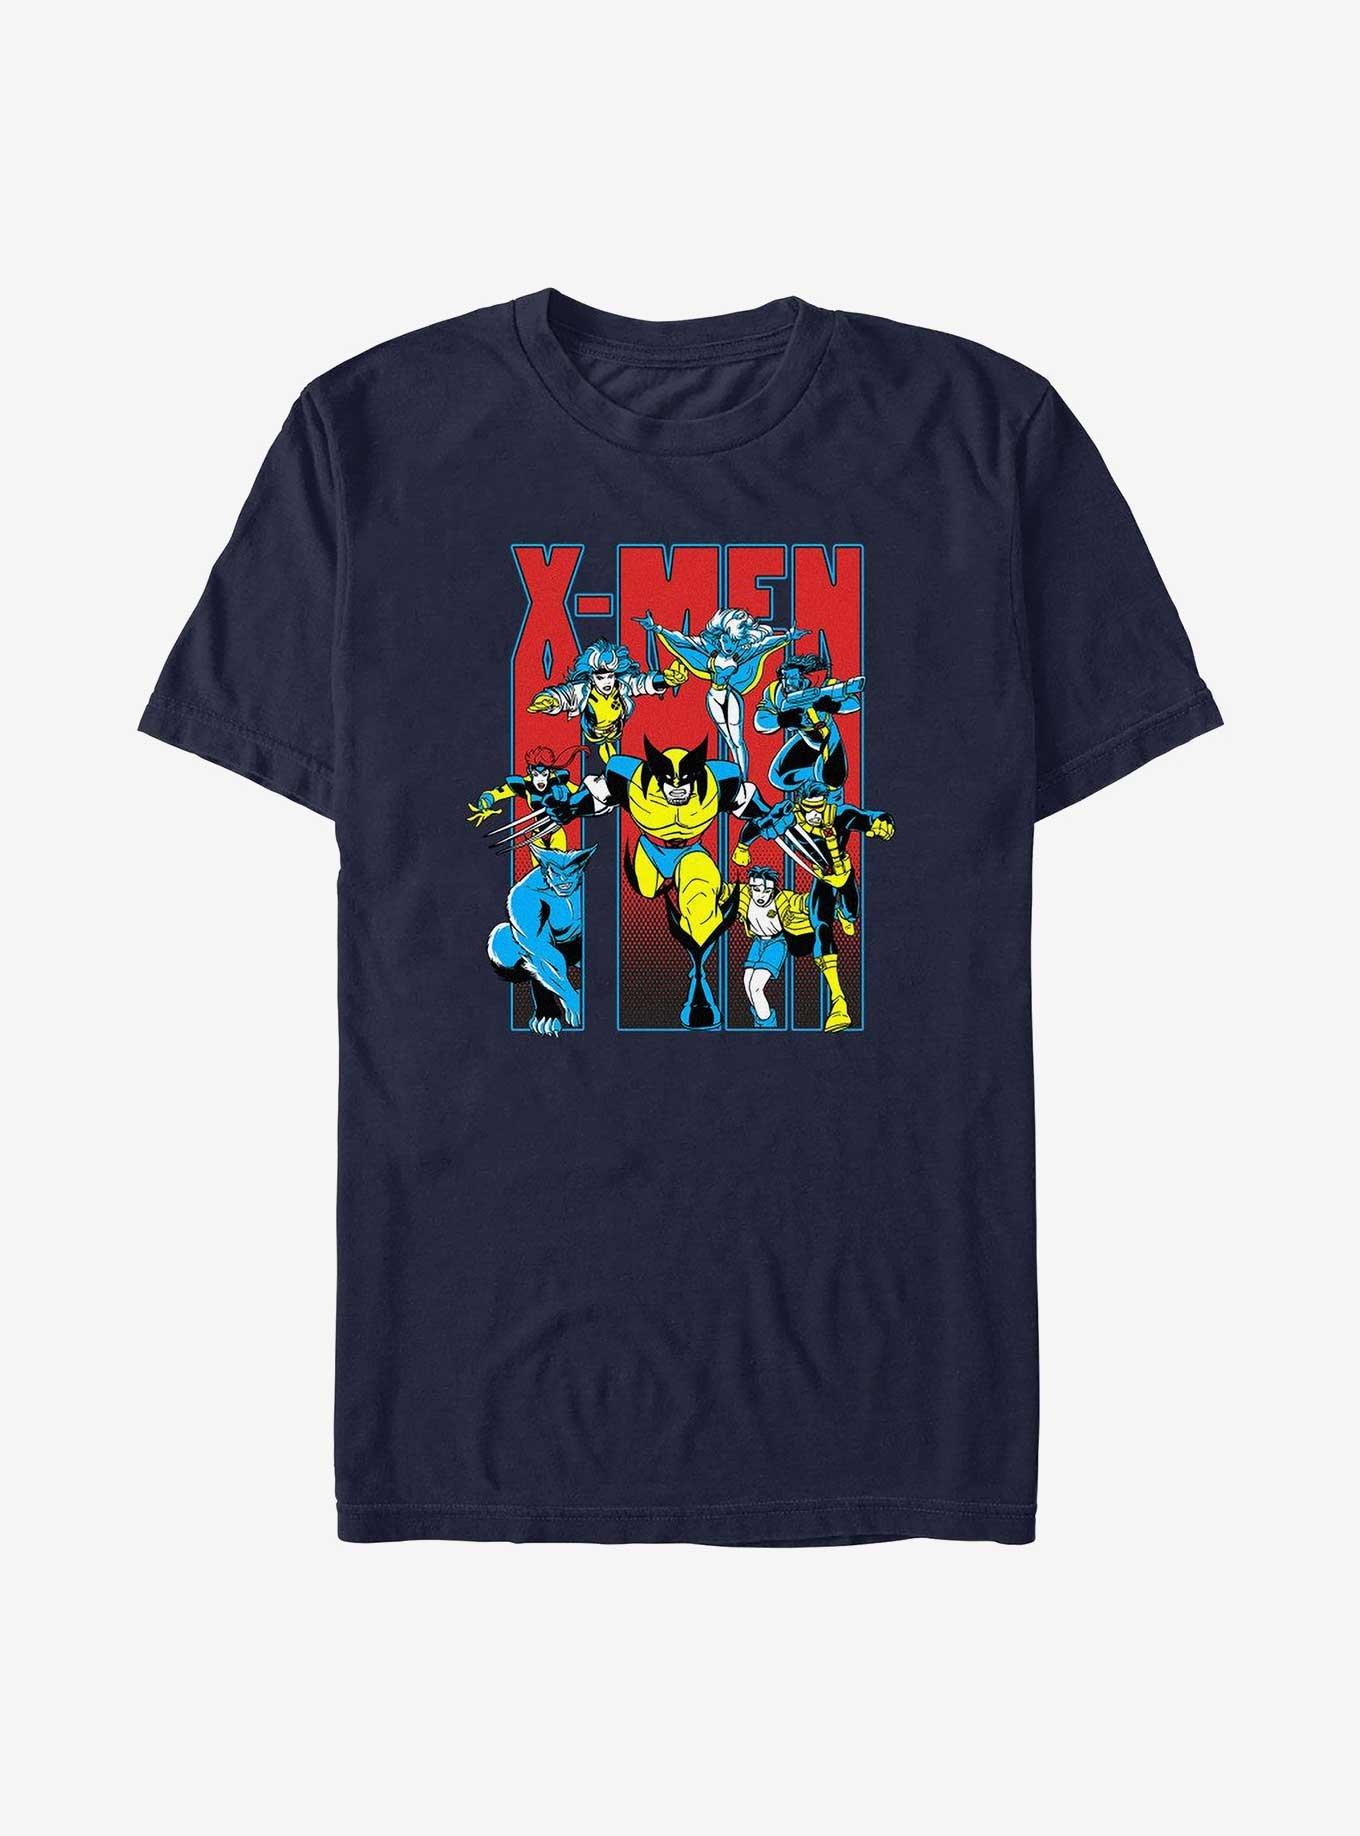 X-Men Xmen Teamup Run T-Shirt